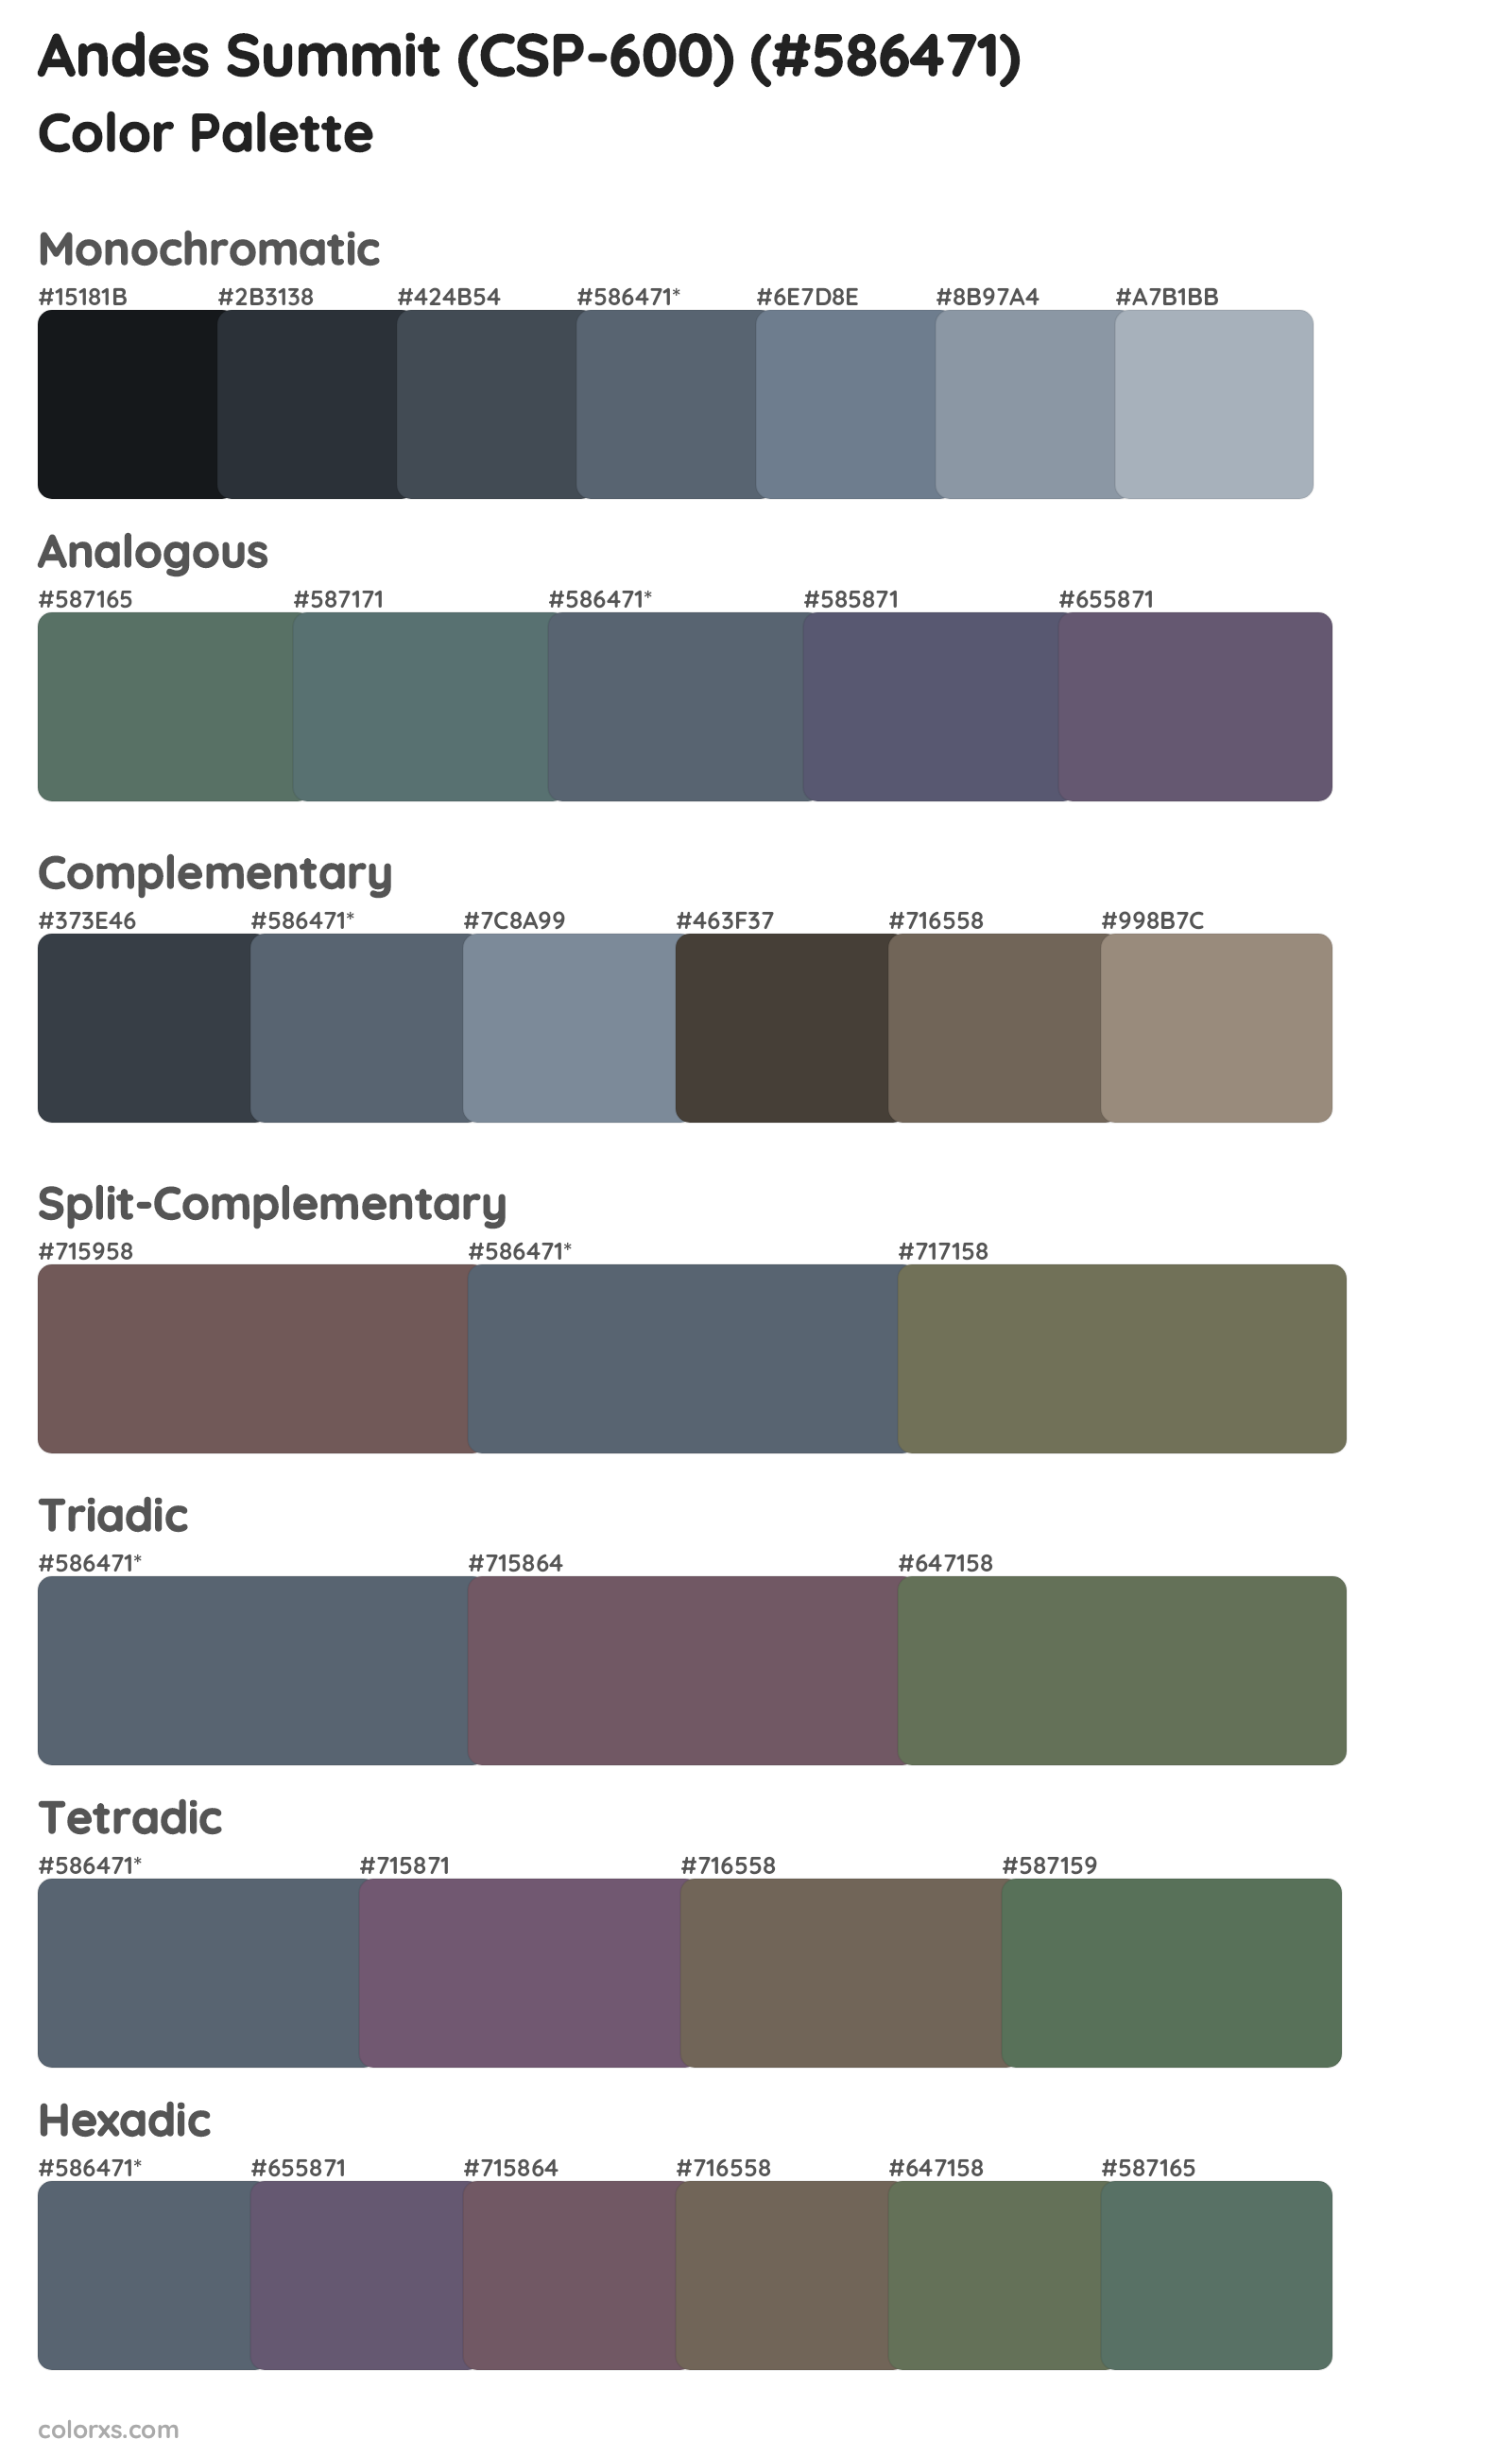 Andes Summit (CSP-600) Color Scheme Palettes